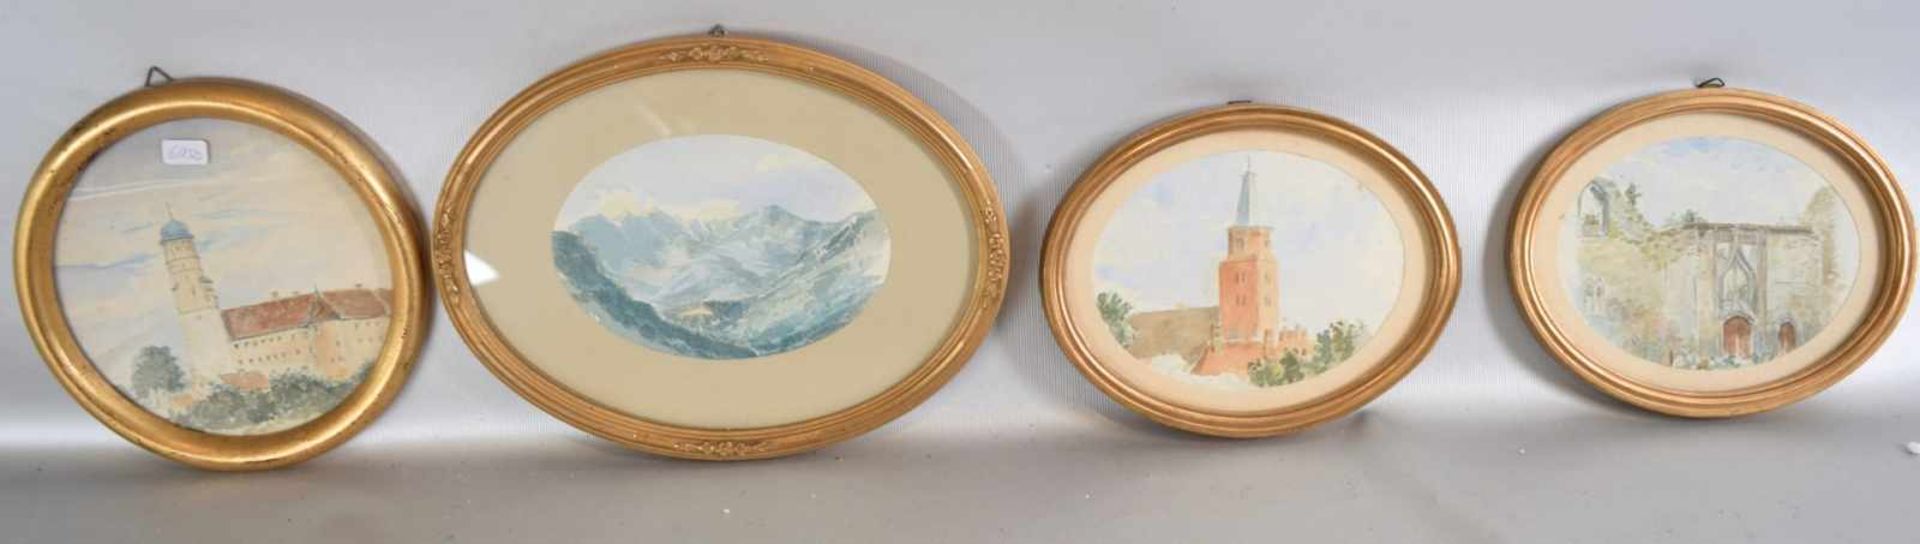 Konvolut vier Aquarelle verschiedene Ansichten, im runden bzw. ovalen Goldrahmen, Dm ca. 17-24 cm